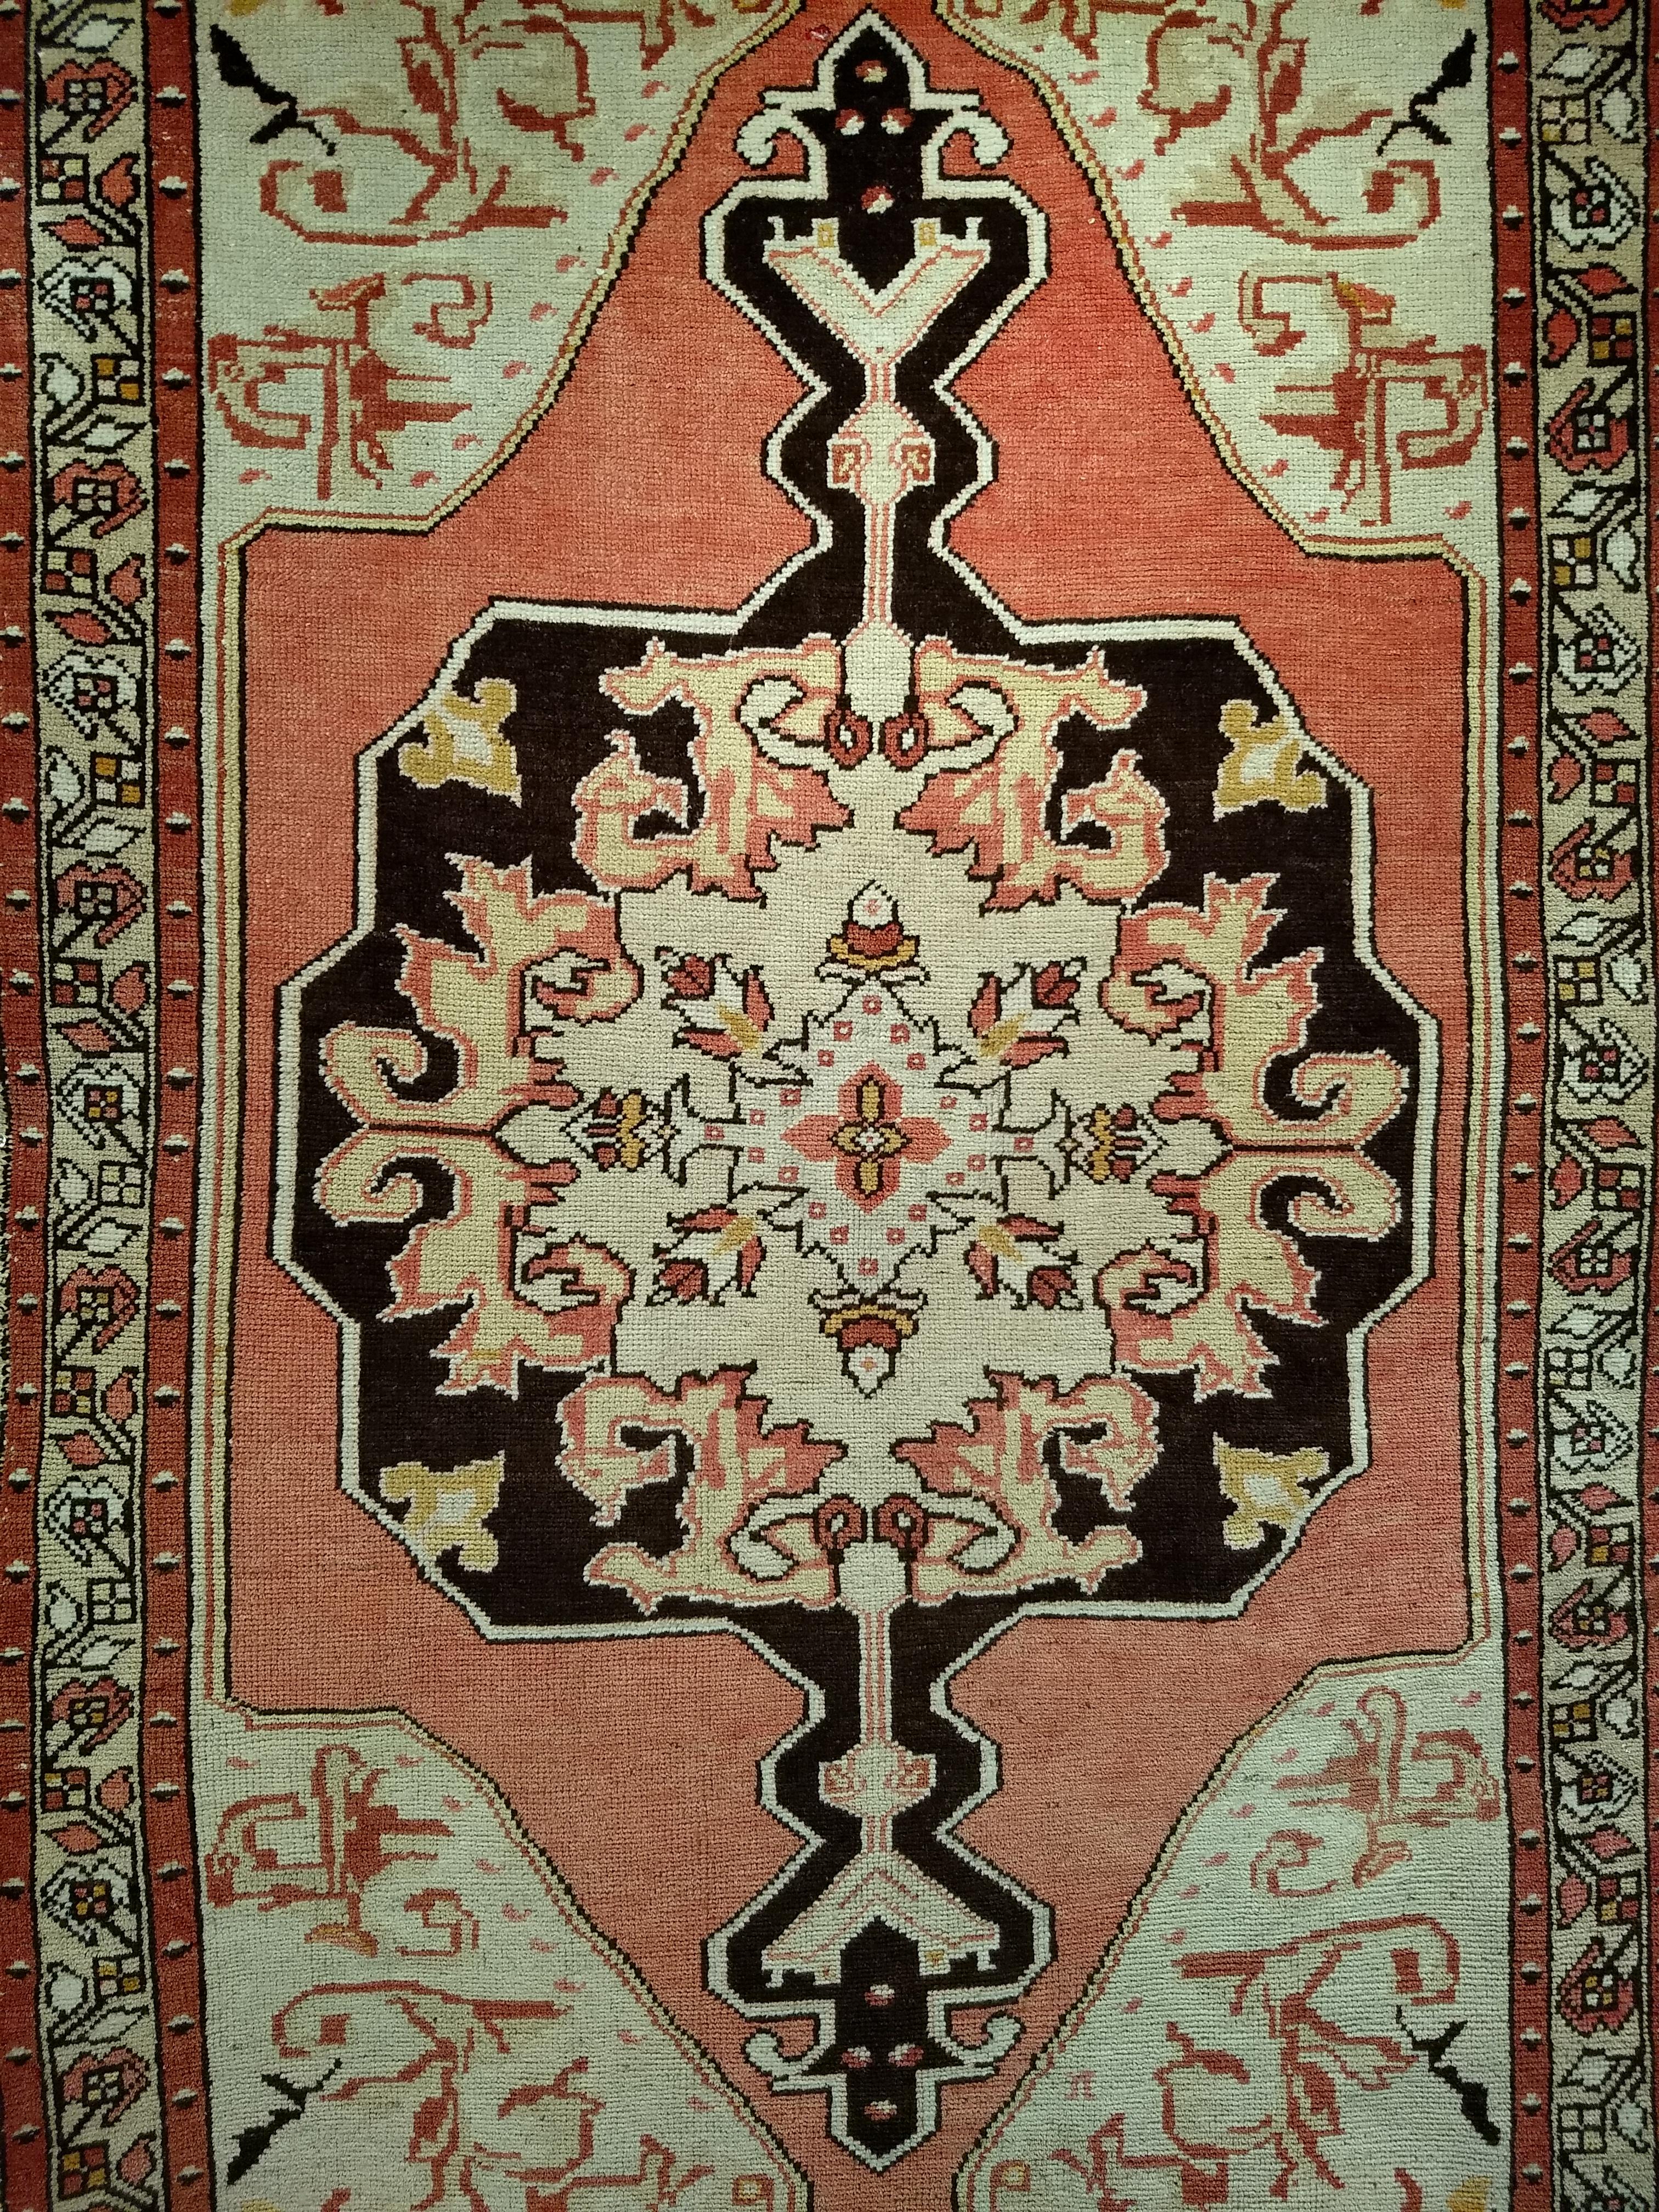 Magnifique tapis turc Oushak du début des années 1900. Le tapis a un champ de couleur crème et un grand médaillon central de couleur rouge clair. Le médaillon de couleur chocolat noir est serti dans un médaillon plus grand de couleur rouge clair. La